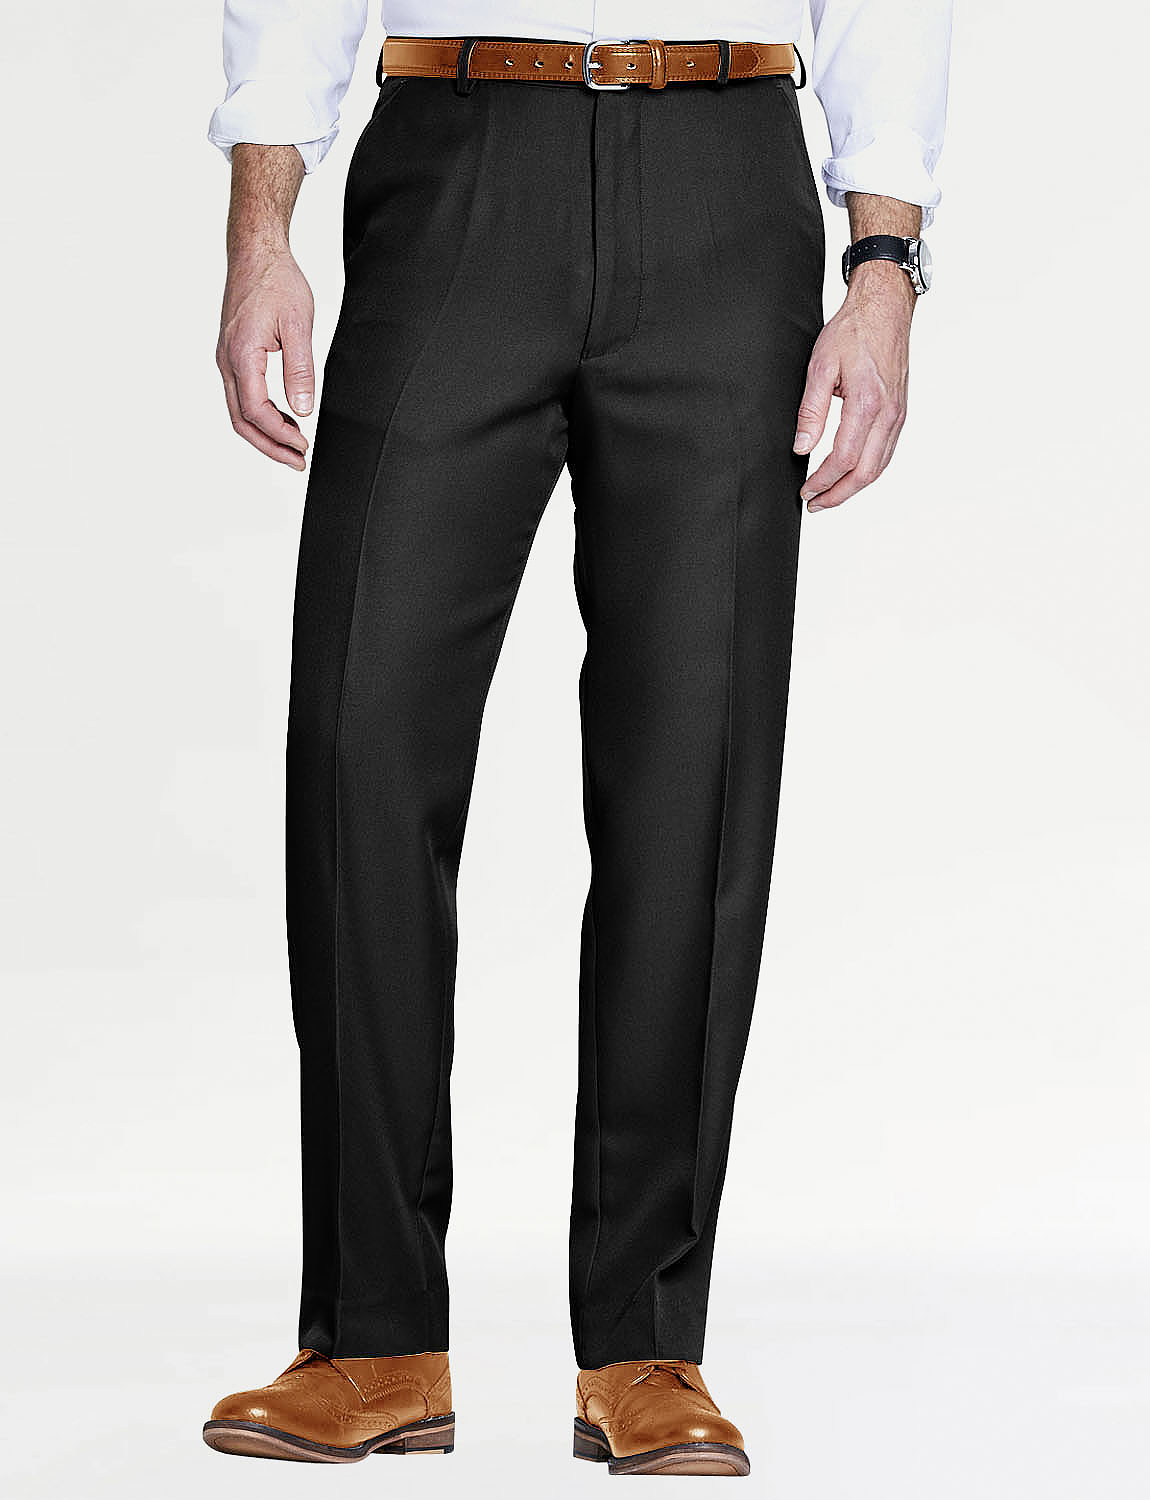 Farah Roachman regular fit smart trousers in black  ASOS